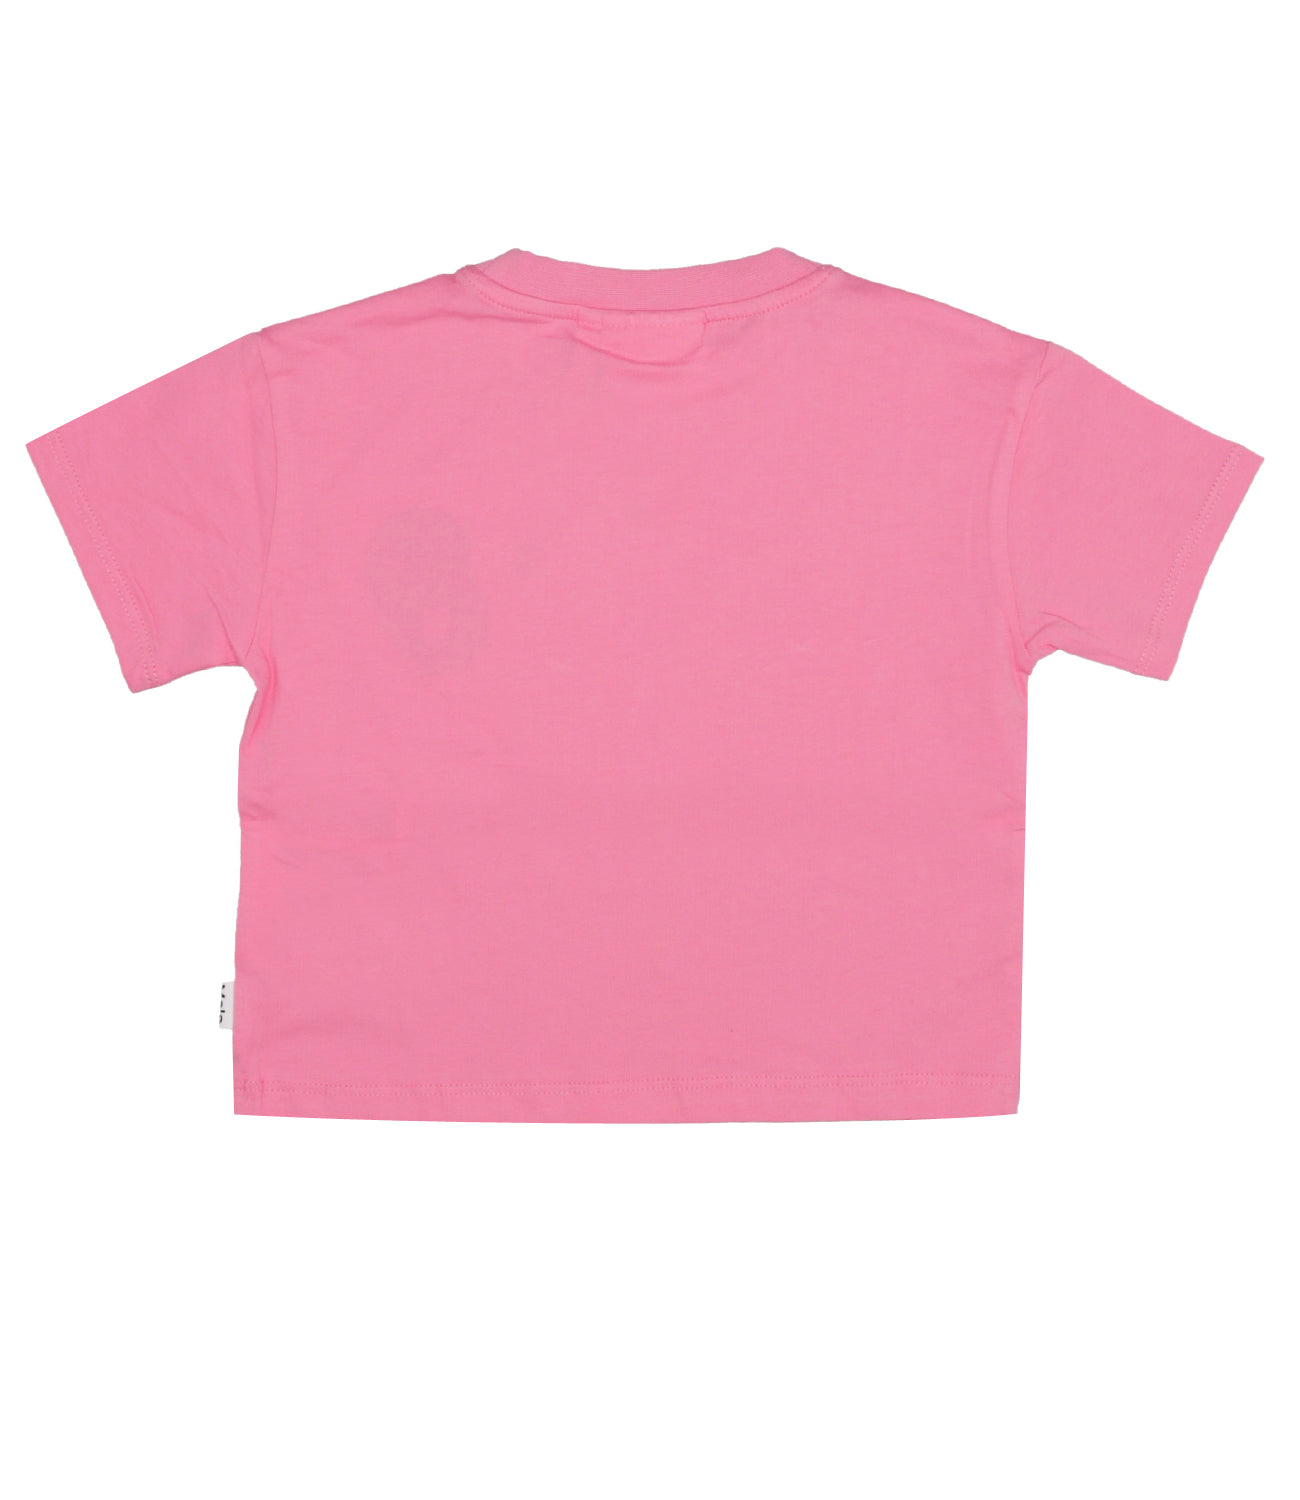 Molo | T-Shirt Rosa